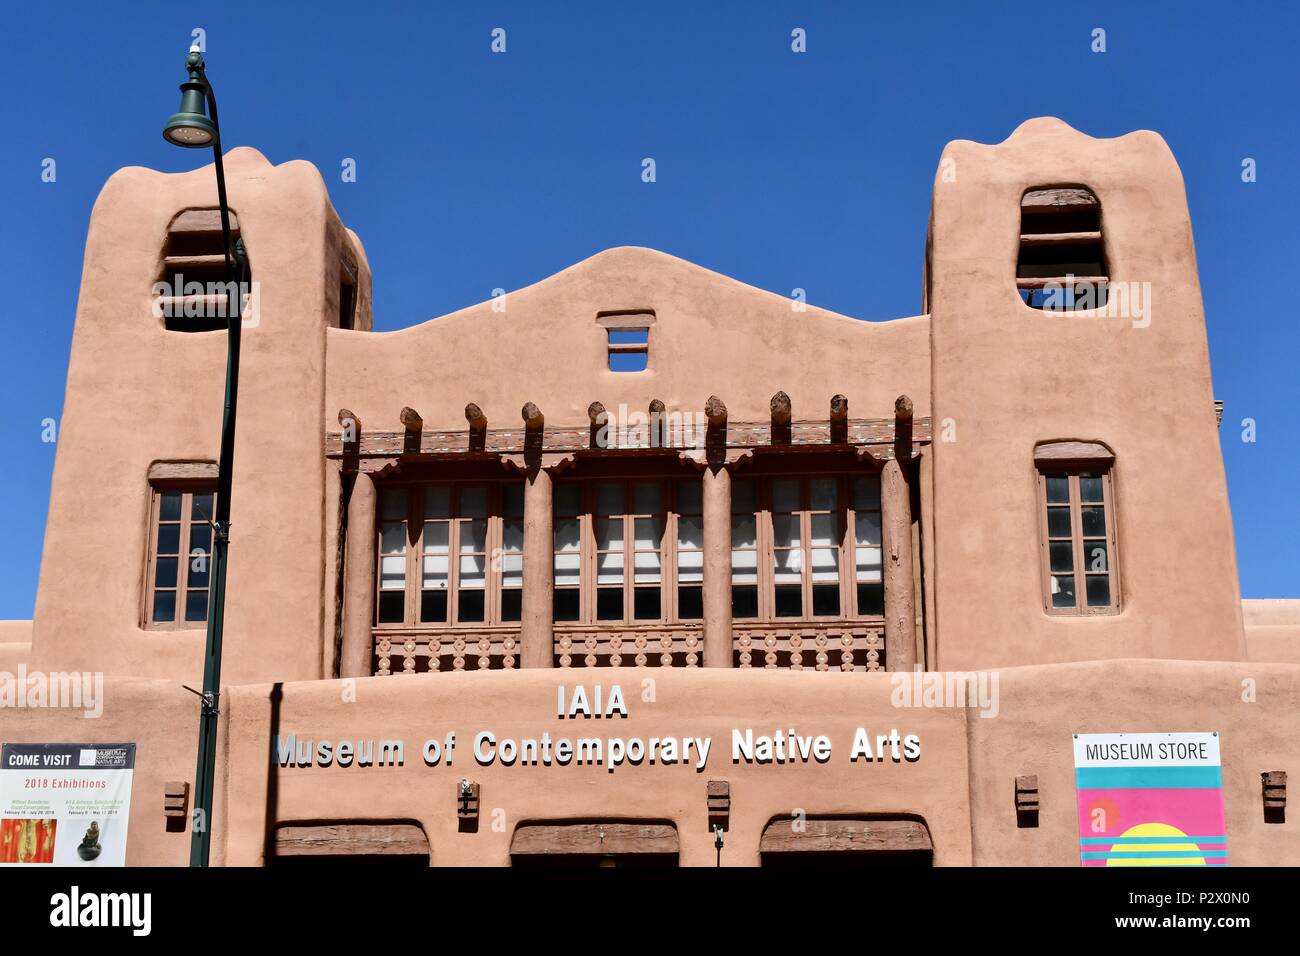 Partie supérieure de la musée d'Contemporate Native Art facade Banque D'Images